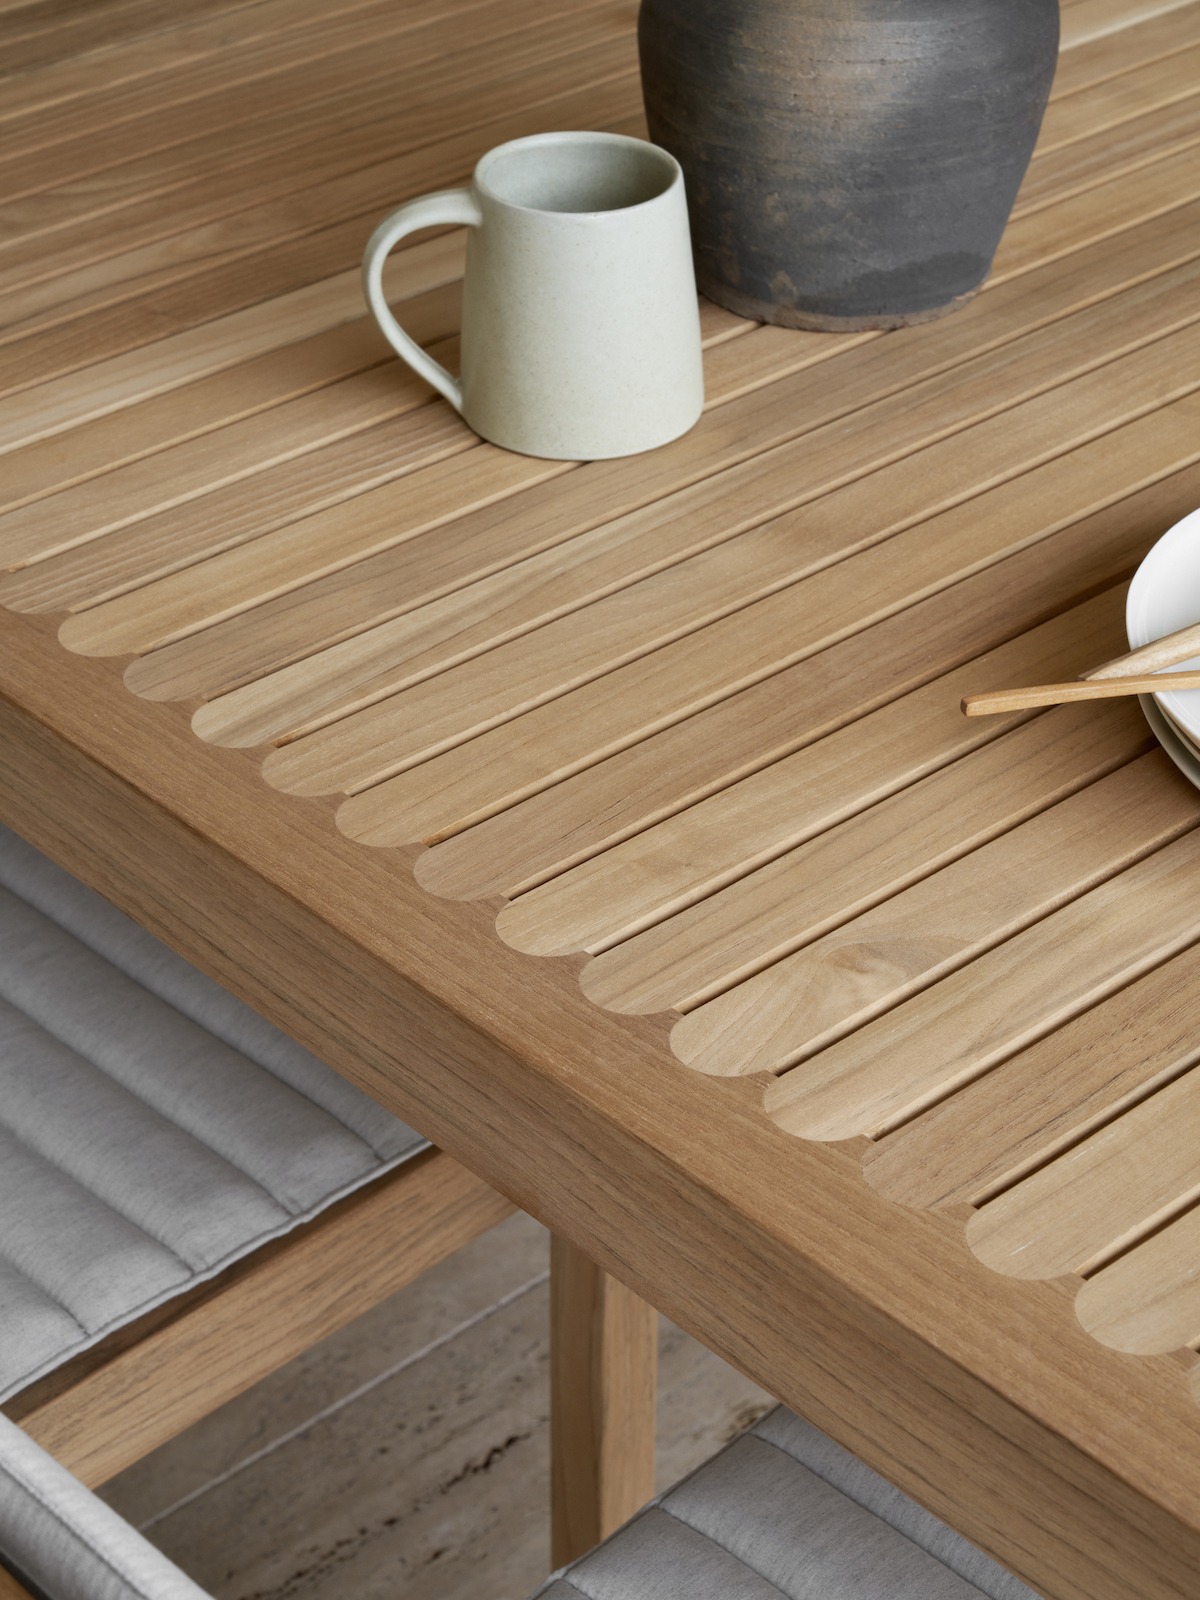 Tischplatte aus Teakleisten mit kleinem Abstand, darauf steht eine Tasse aus heller Keramik. 